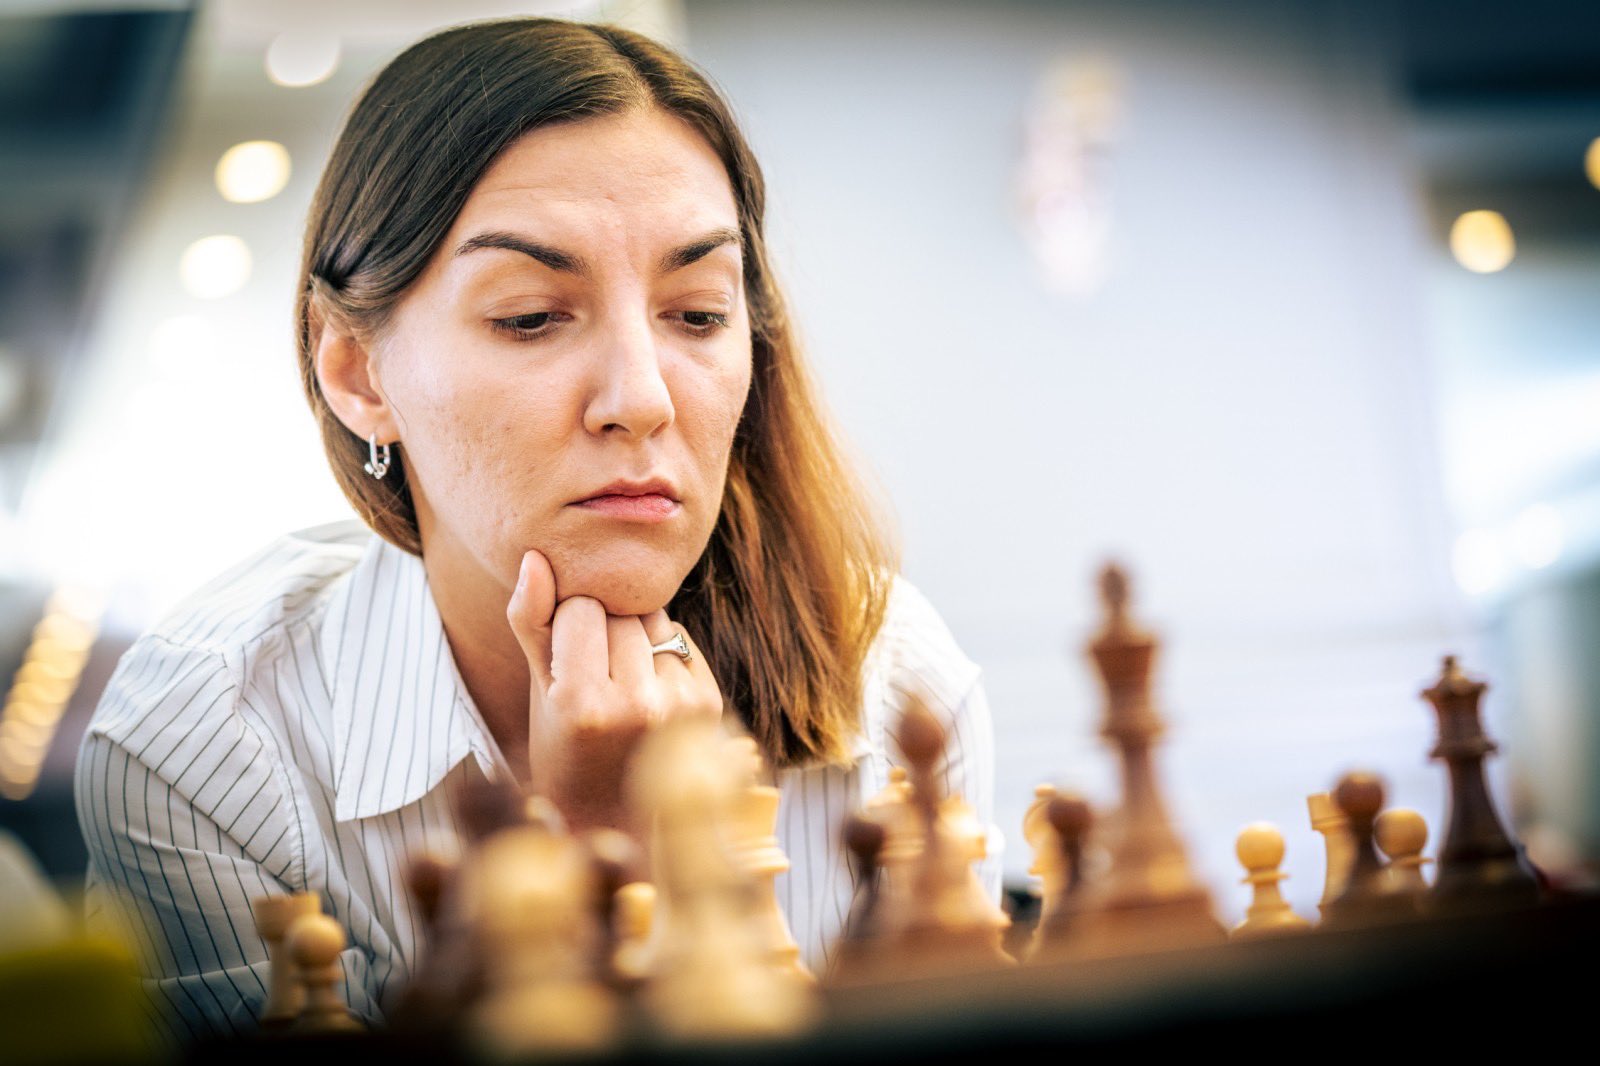 European Chess Union on X: 𝐎𝐟𝐟𝐞𝐫𝐬𝐩𝐢𝐥𝐥 𝐒𝐣𝐚𝐤𝐤𝐥𝐮𝐛